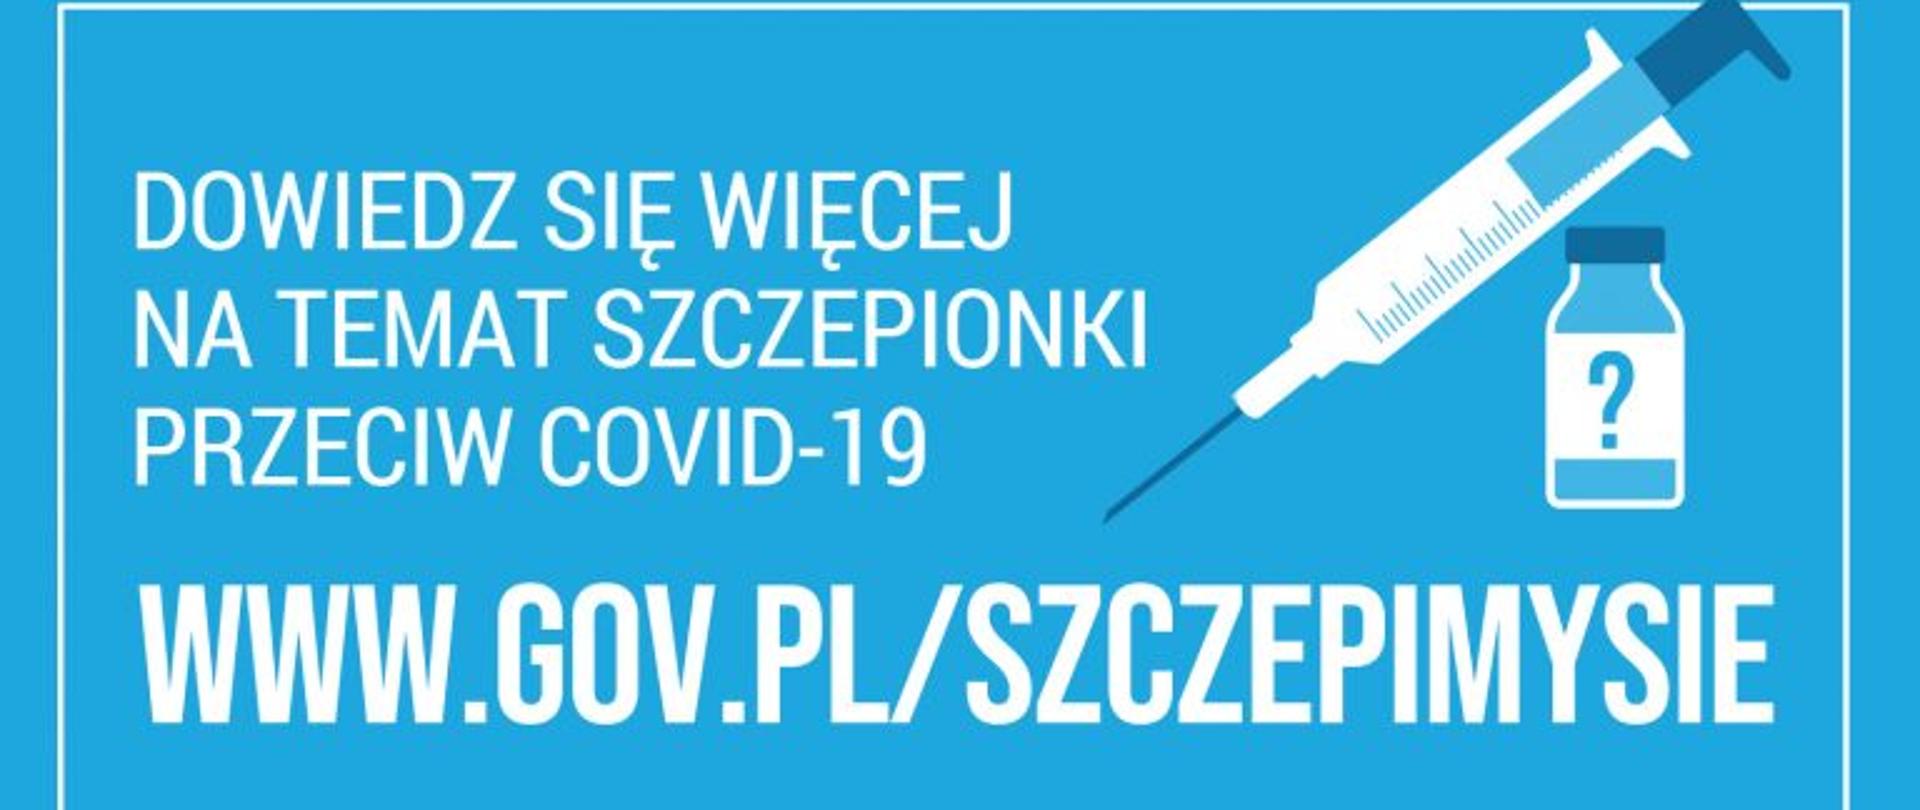 www.gov.pl/szczepimysie